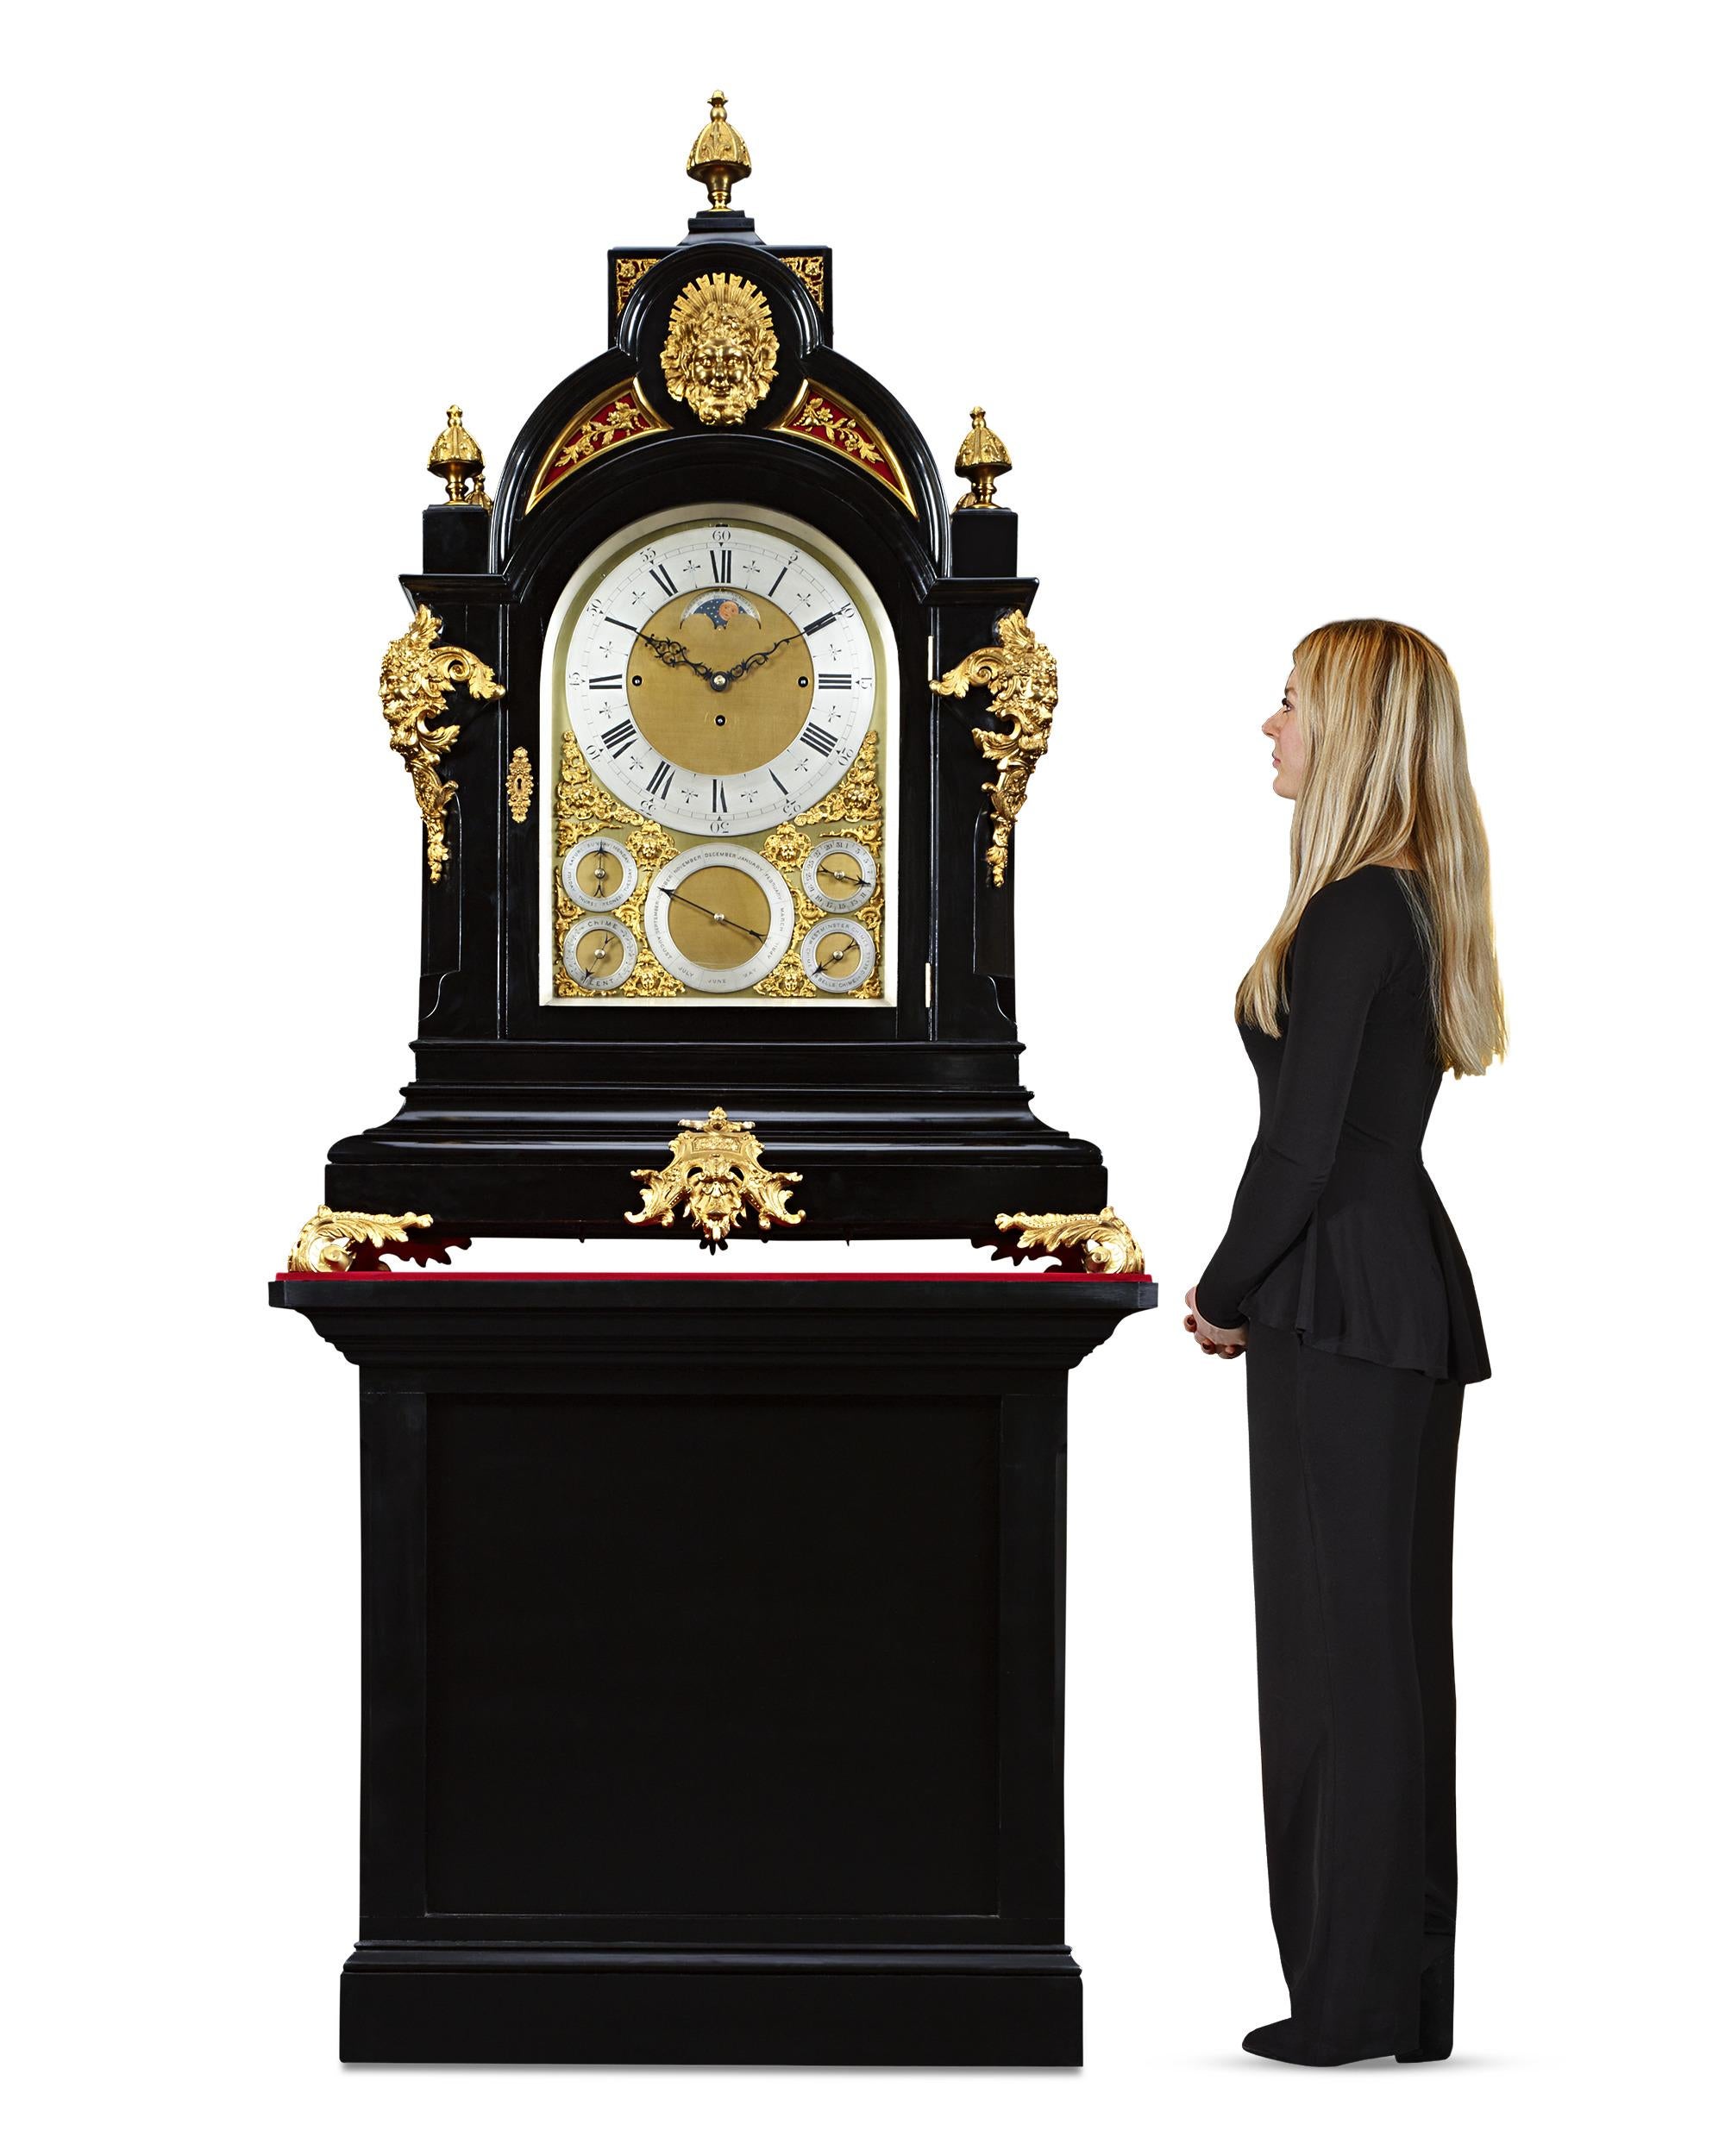 Cette horloge à console du 19e siècle, aux détails complexes, de la célèbre firme anglaise J.C. Jennens & Sons est d'une taille monumentale, probablement réalisée pour l'une des grandes expositions universelles ou peut-être pour être placée dans la